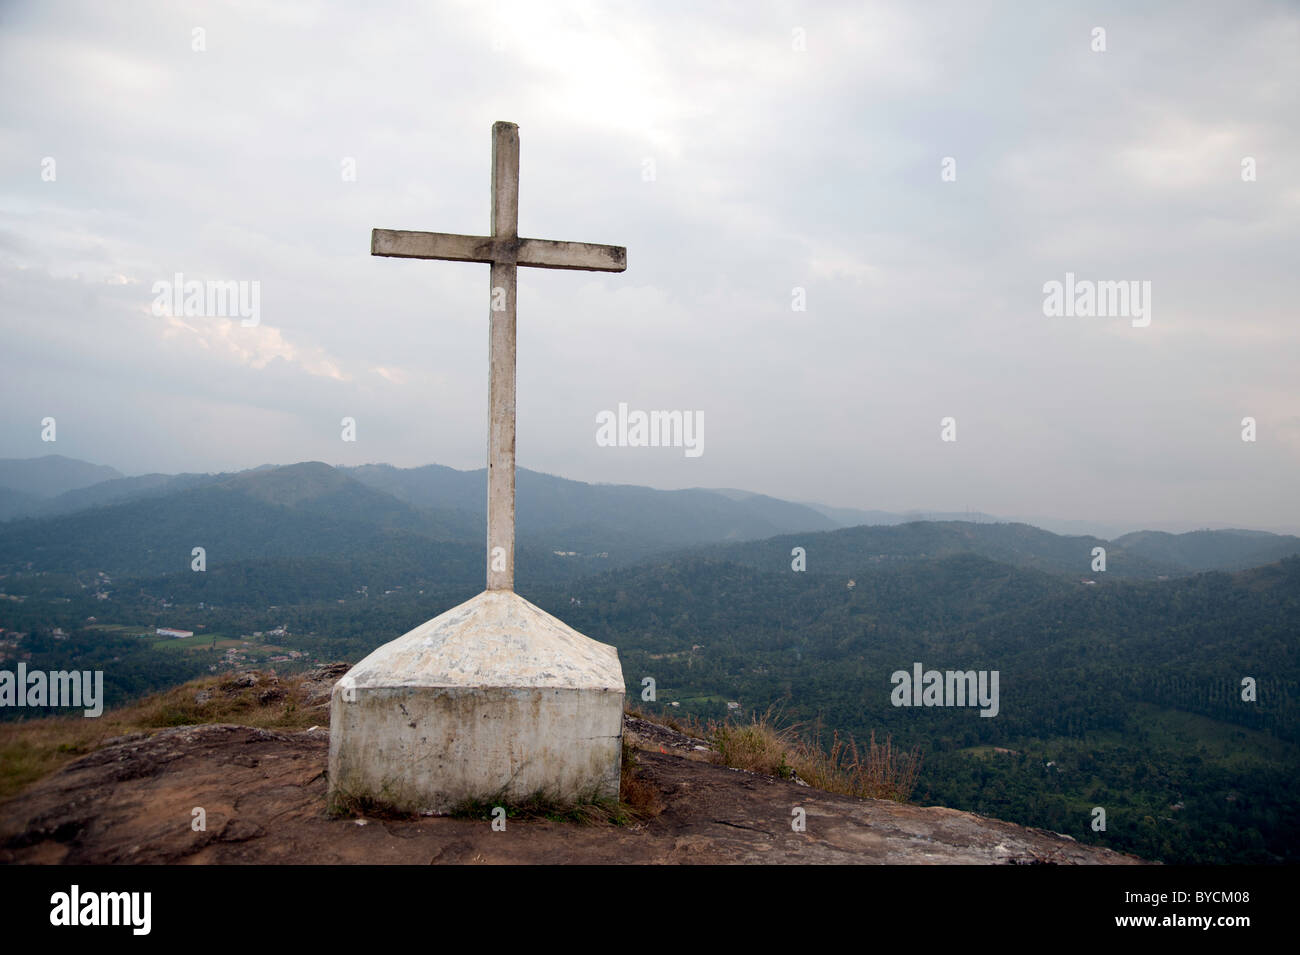 Croix sur une montagne. Un cross situé au sommet d'une colline près de l'endroit de thekkady au Kerala, en Inde avec vue sur l'arrière-plan Banque D'Images